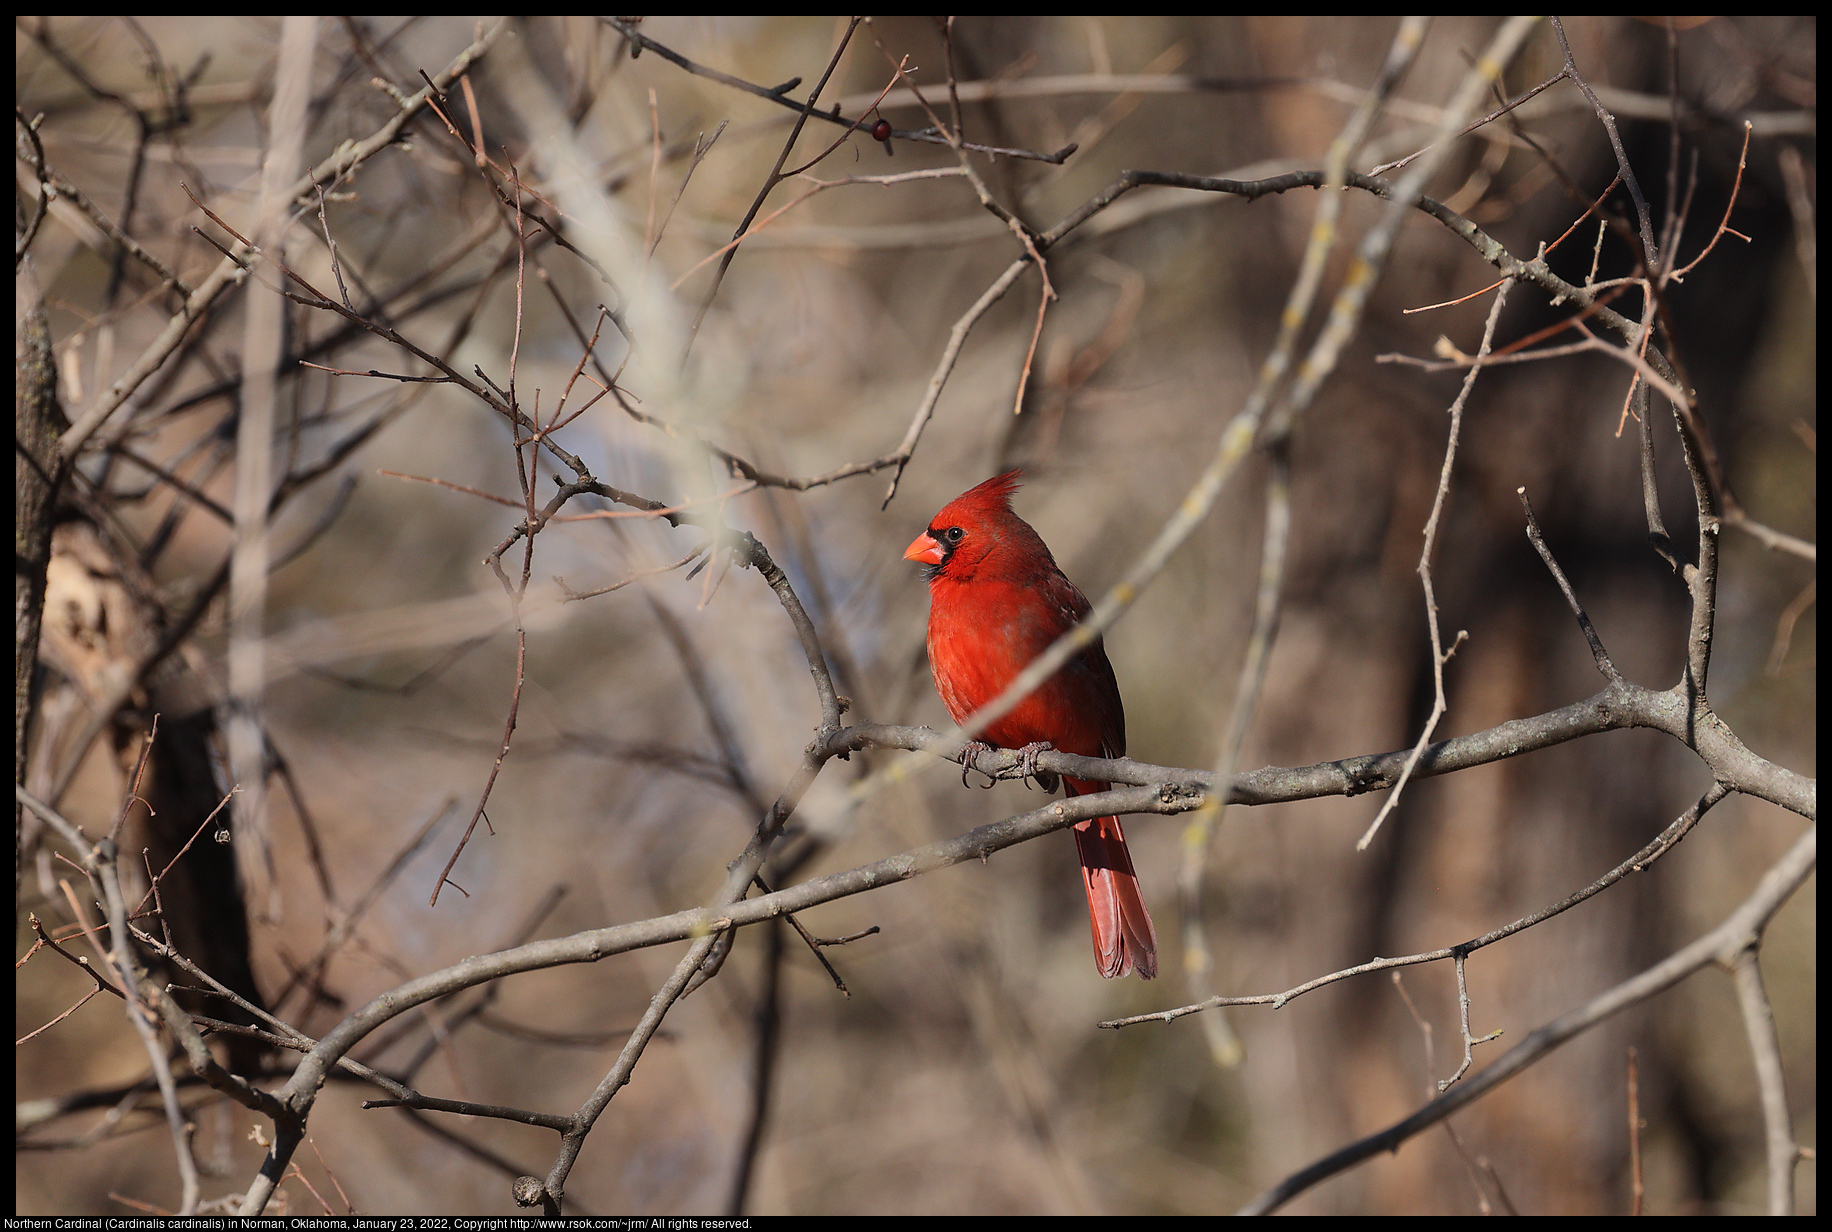 Northern Cardinal (Cardinalis cardinalis) in Norman, Oklahoma, January 23, 2022